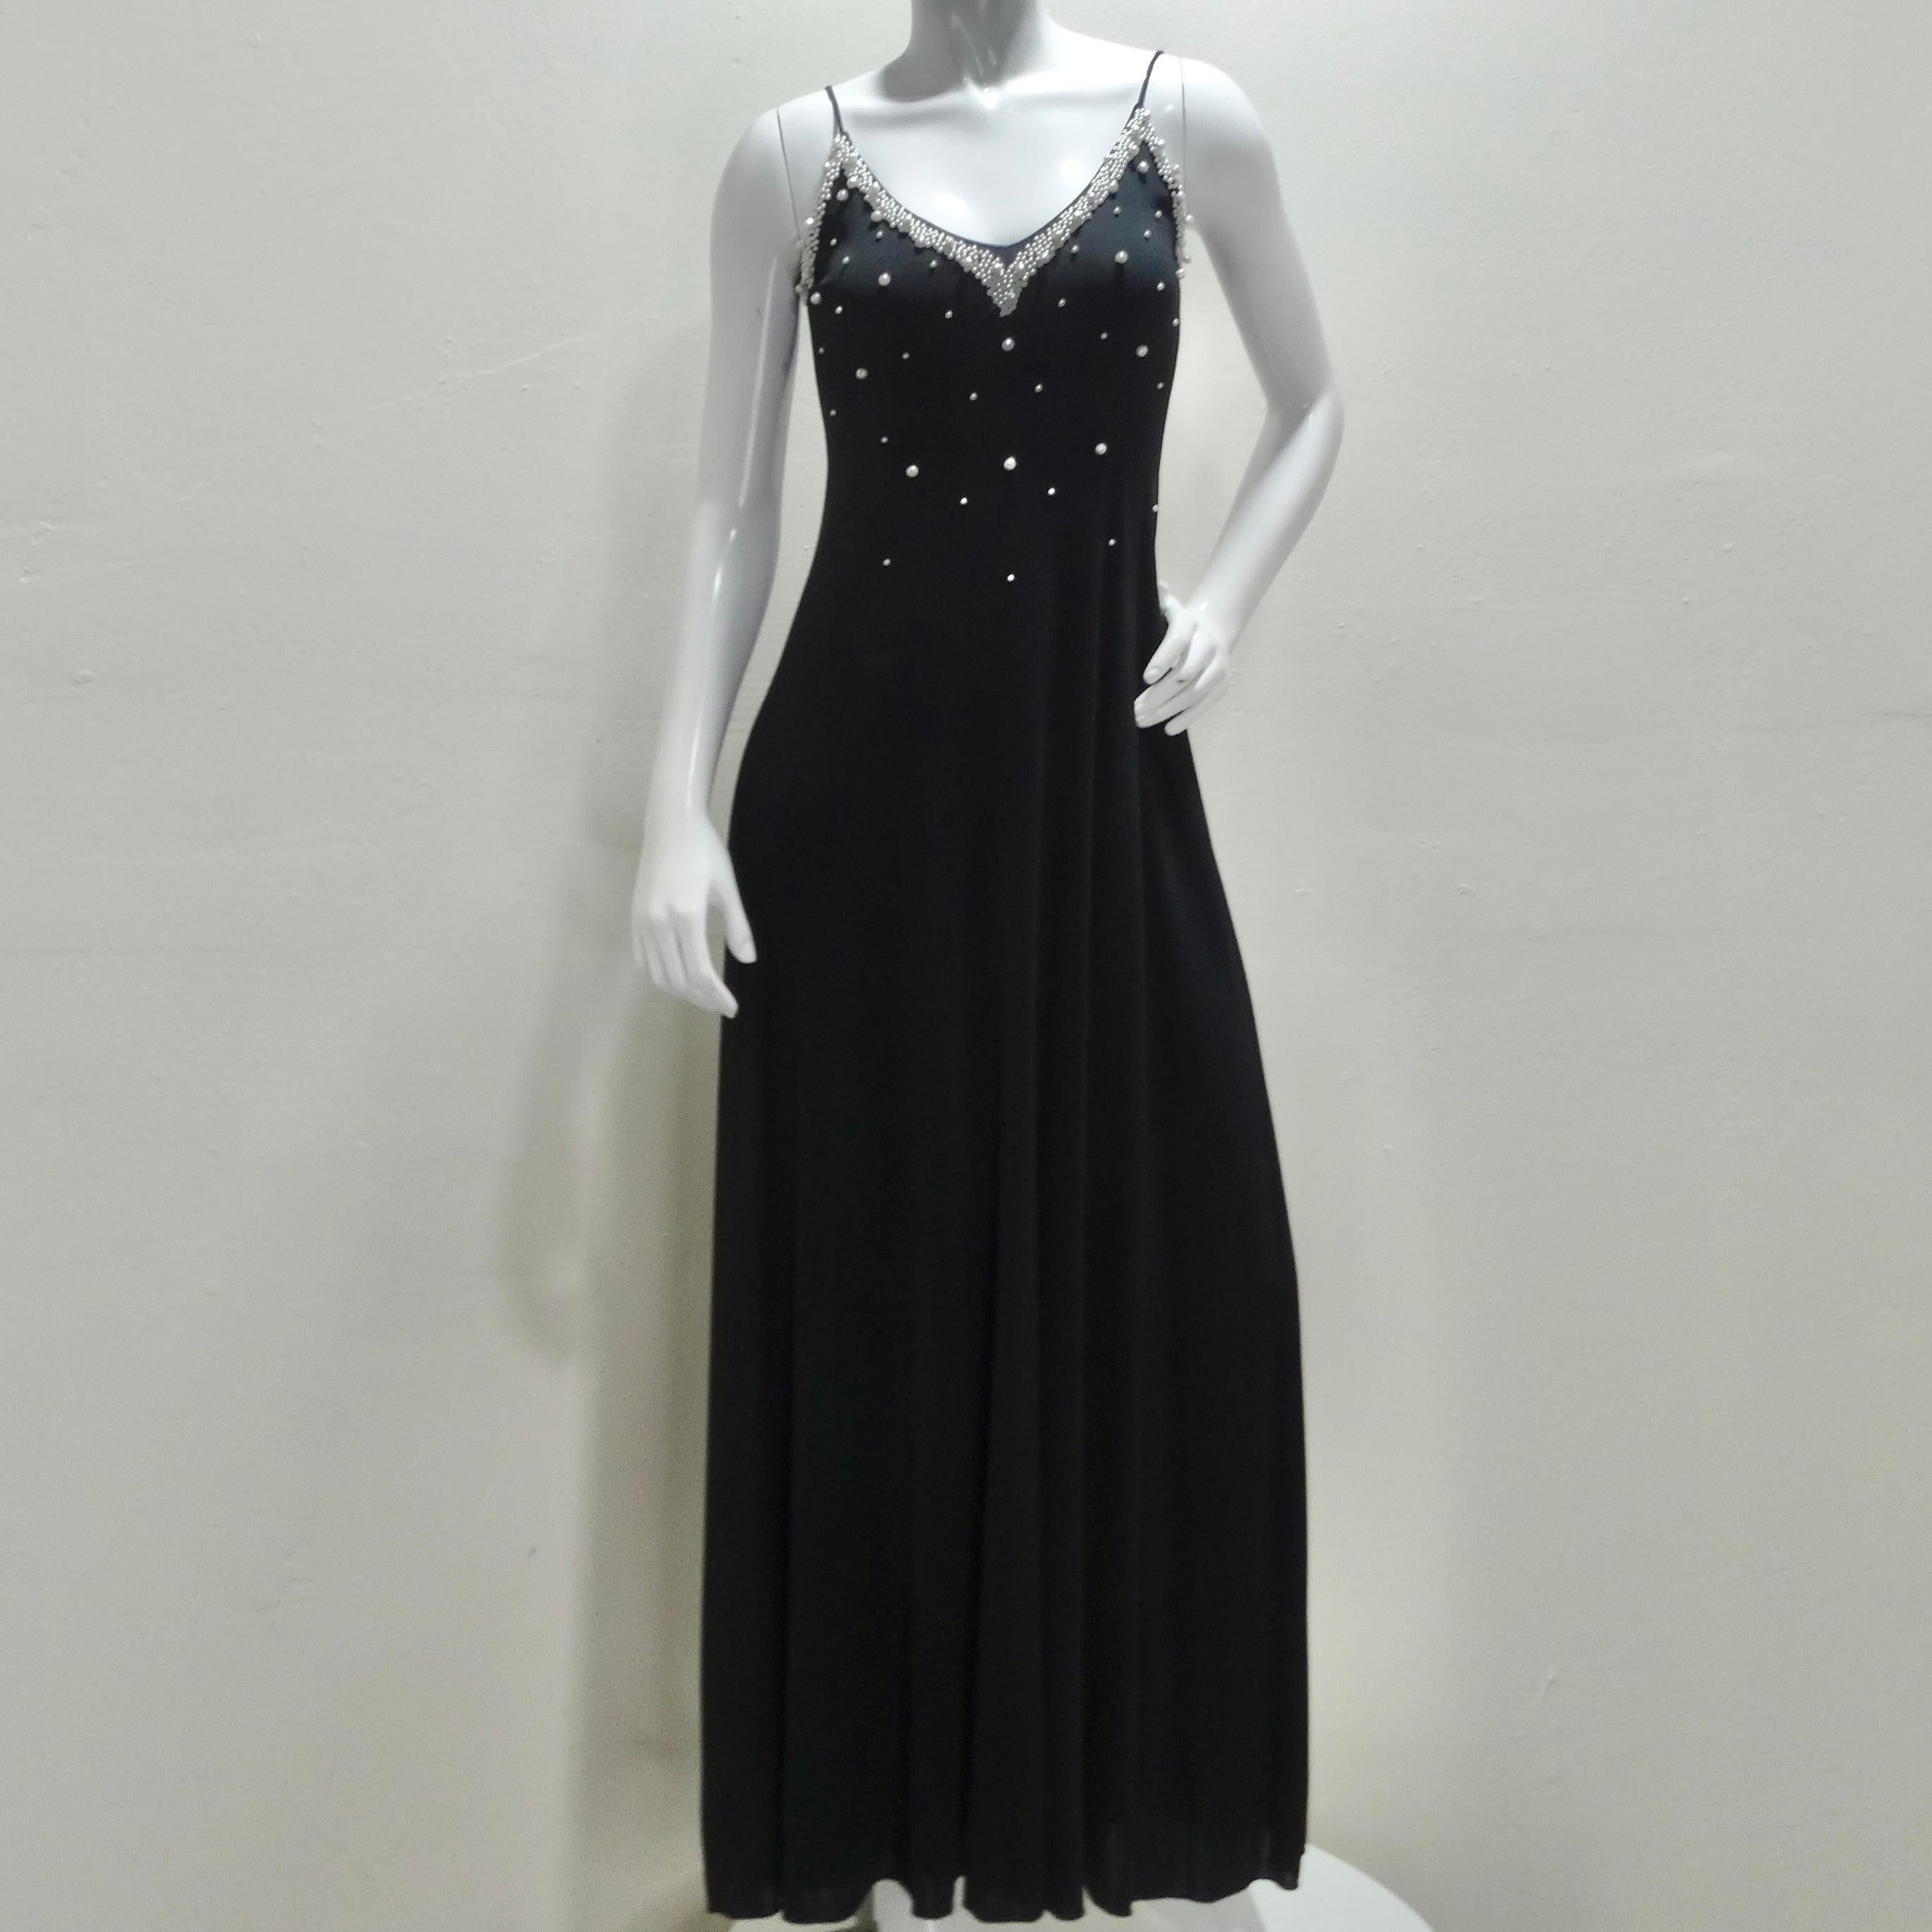 Découvrez le summum du glamour vintage avec ce superbe ensemble robe longue et cardigan perlé noir des années 1980. Cet ensemble, qui respire la sophistication et le charme intemporel, se compose d'une exquise robe longue noire de style slip, ornée